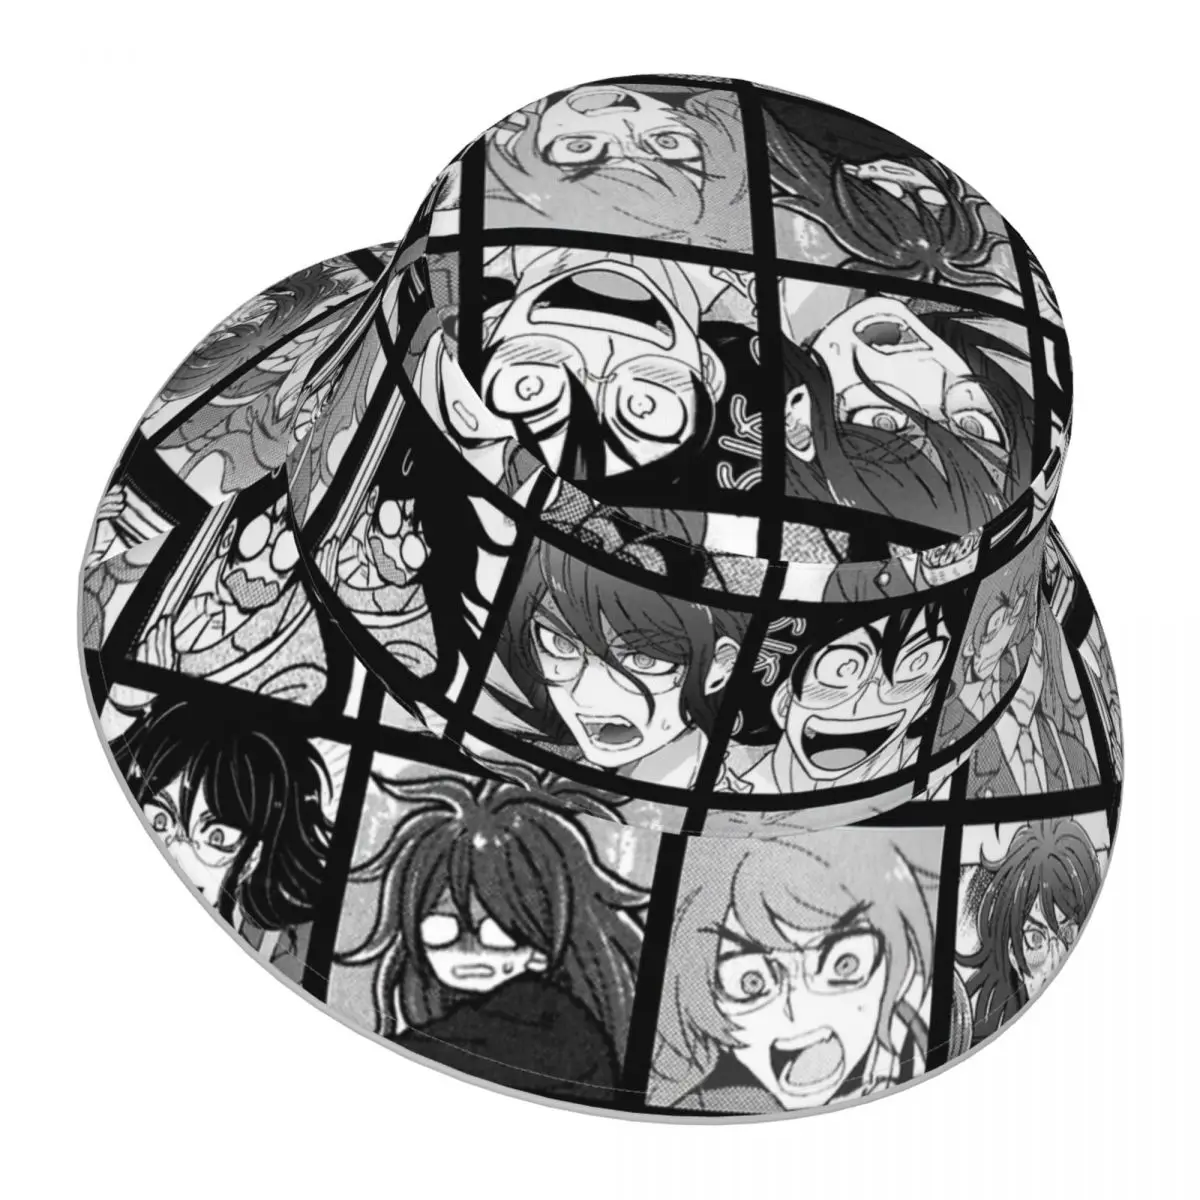 Danganronpa,Gonta Manga Collection reflective Bucket Hat Men Women Bucket Hat Outdoor Sunscreen Beach Hat Sun Hiking Fishing Cap